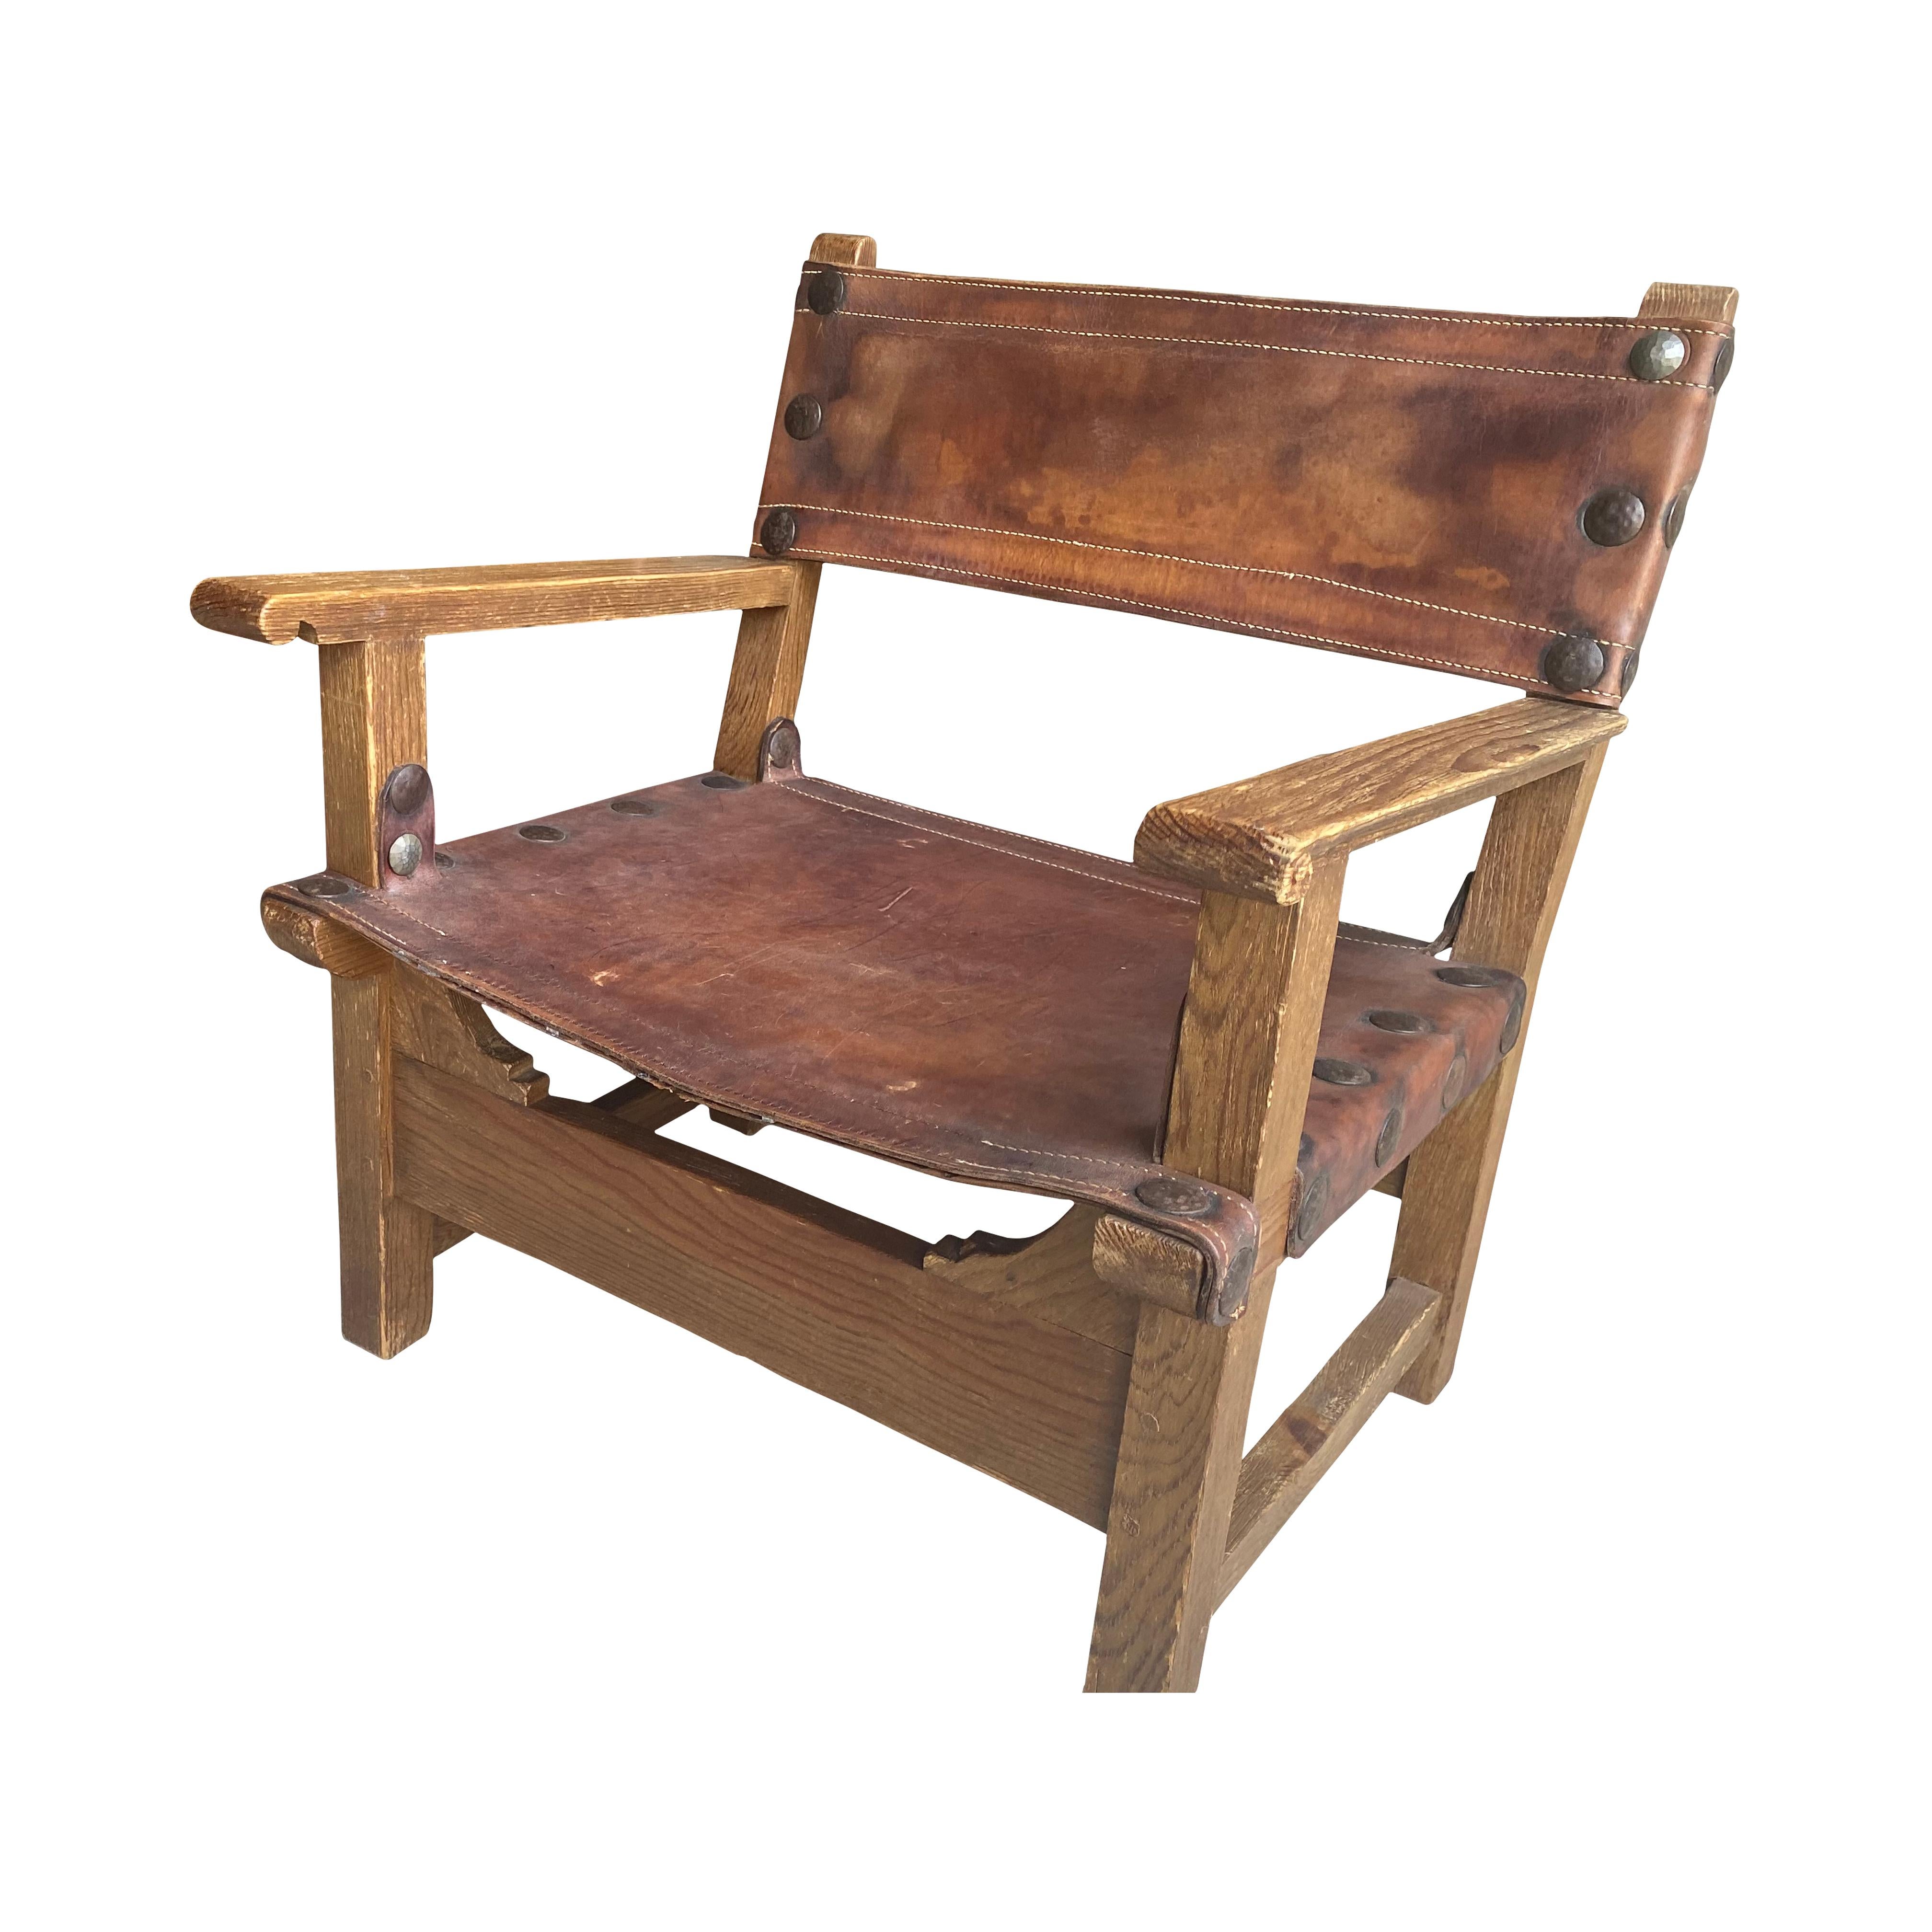 Französischer Sling-Stuhl aus Eichenholz und Leder, typisch für den Chateau- oder Chalet-Stil von Residenzen aus der Mitte des Jahrhunderts in den französischen Alpen. Fantastische übergroße Nagelköpfe und die Patina des Leders verleihen ihm